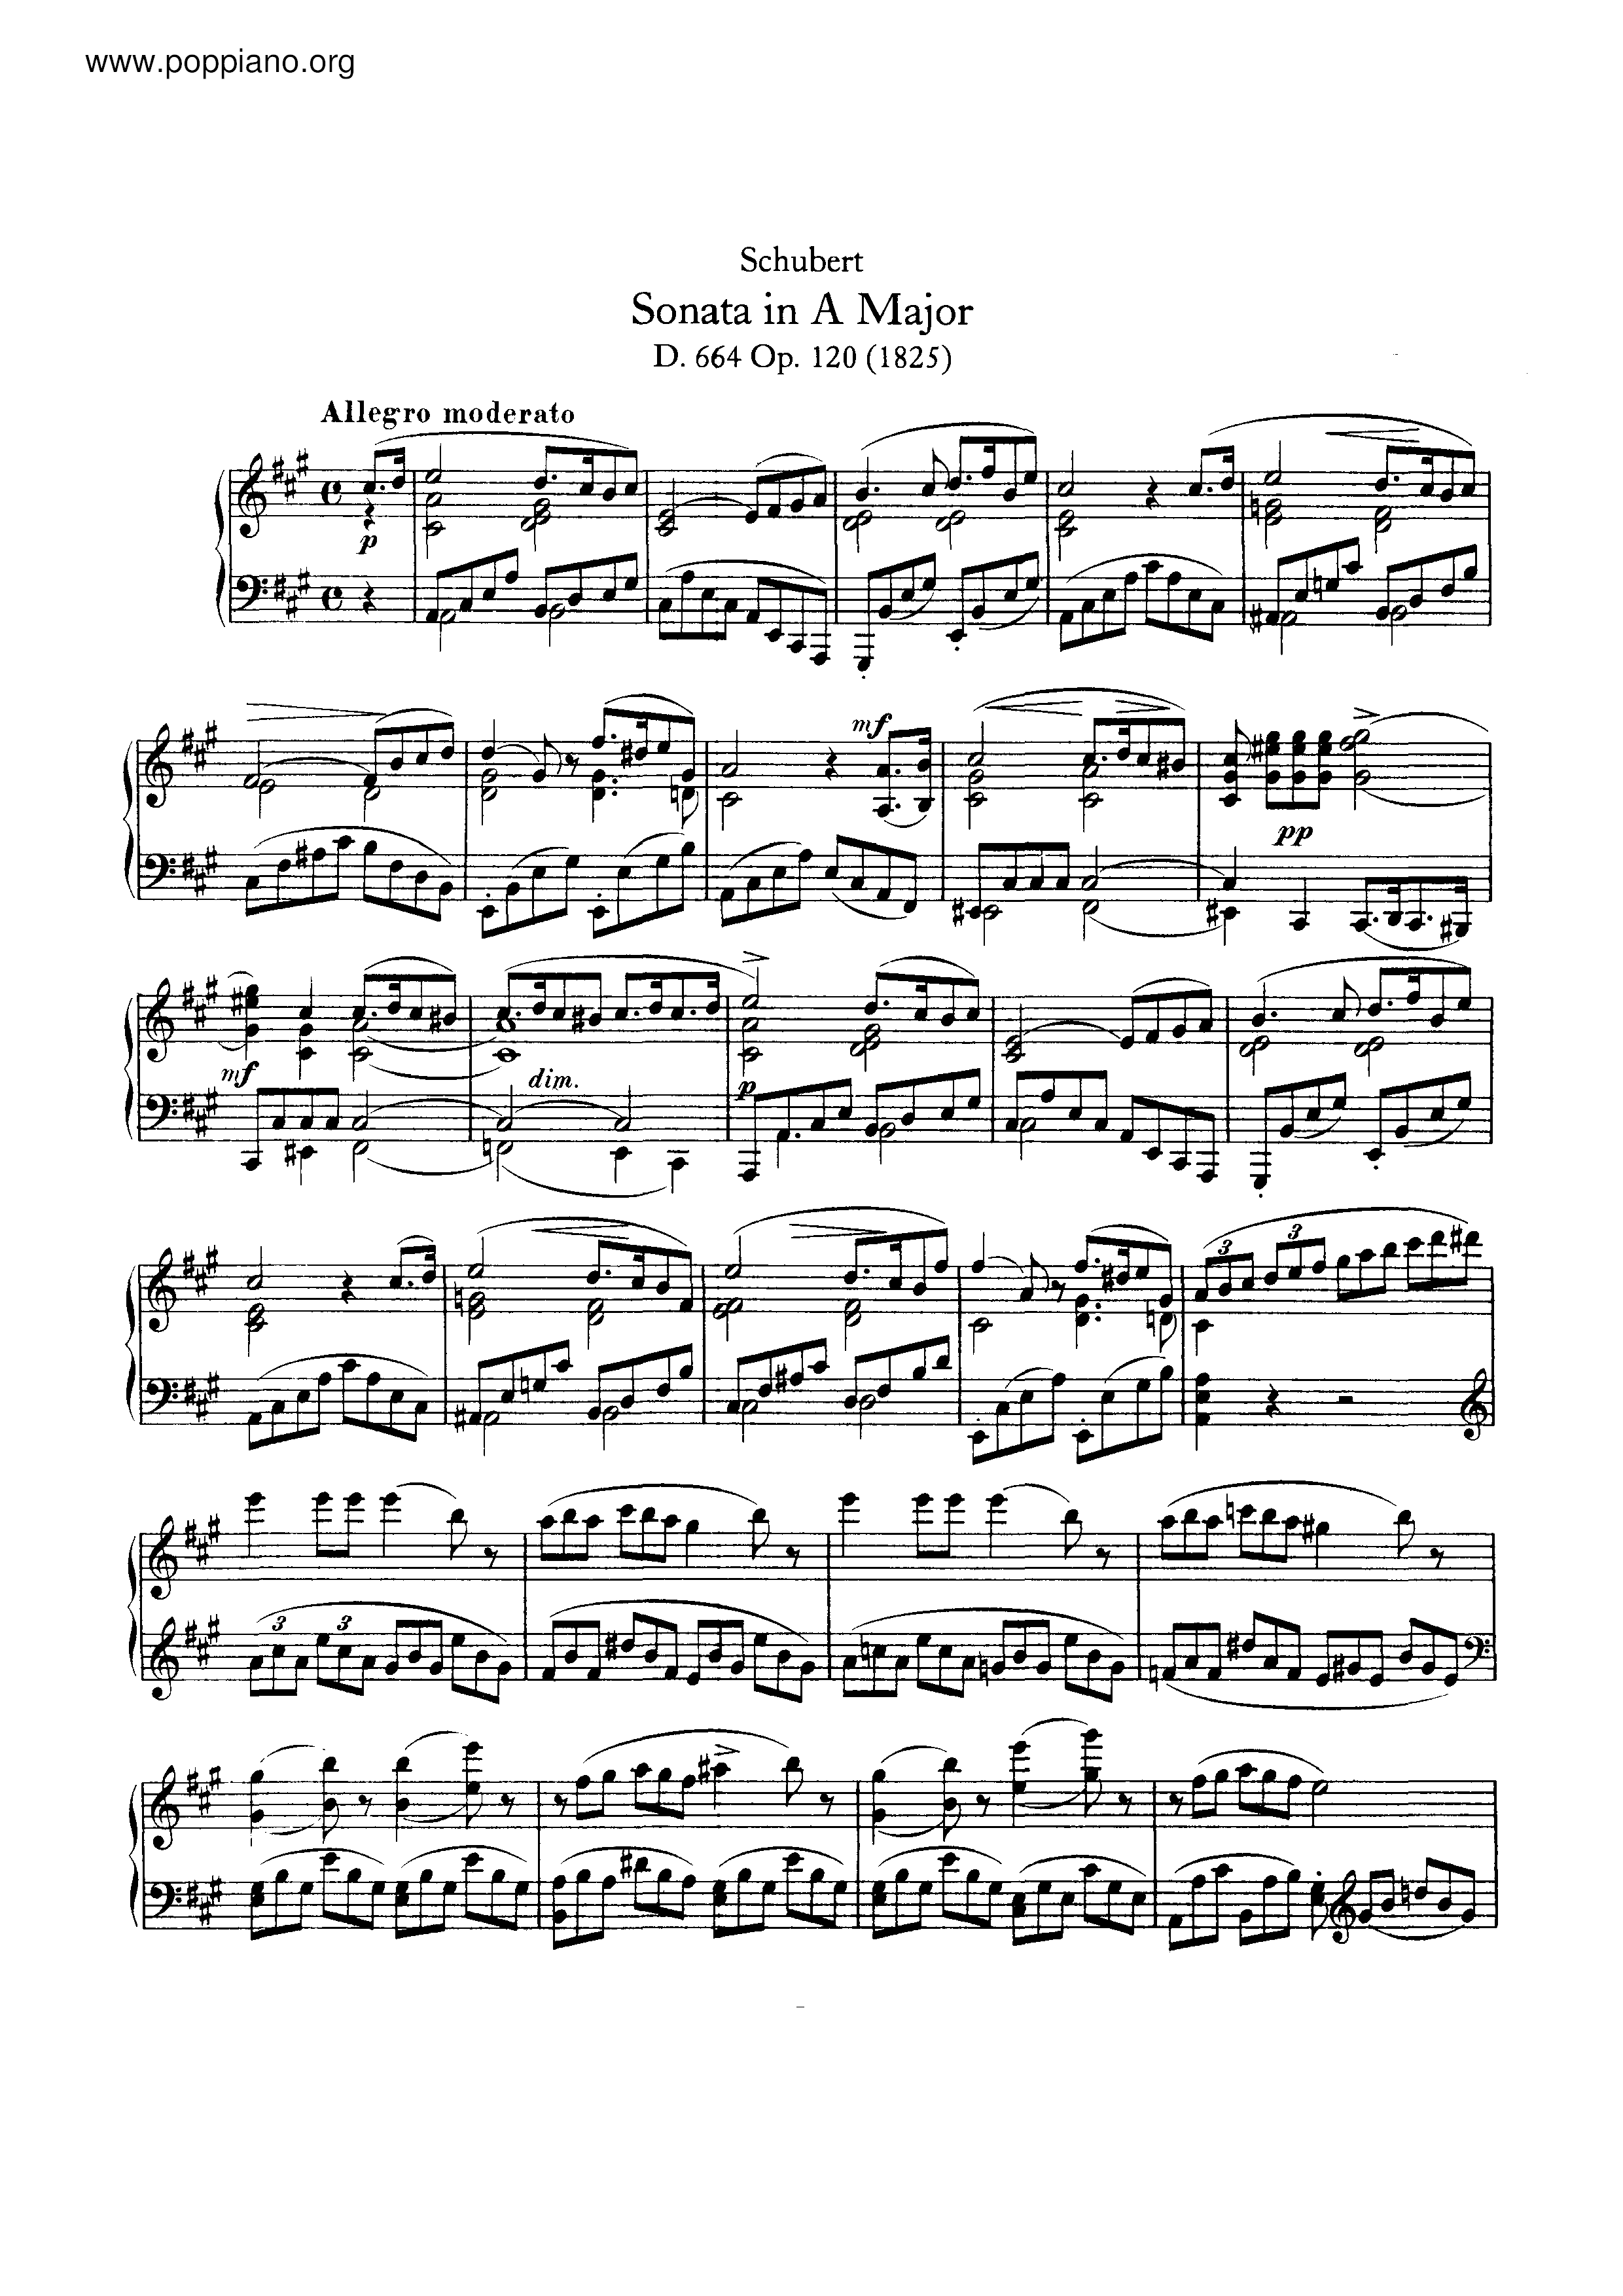 Piano Sonata in A major, D.664 Score